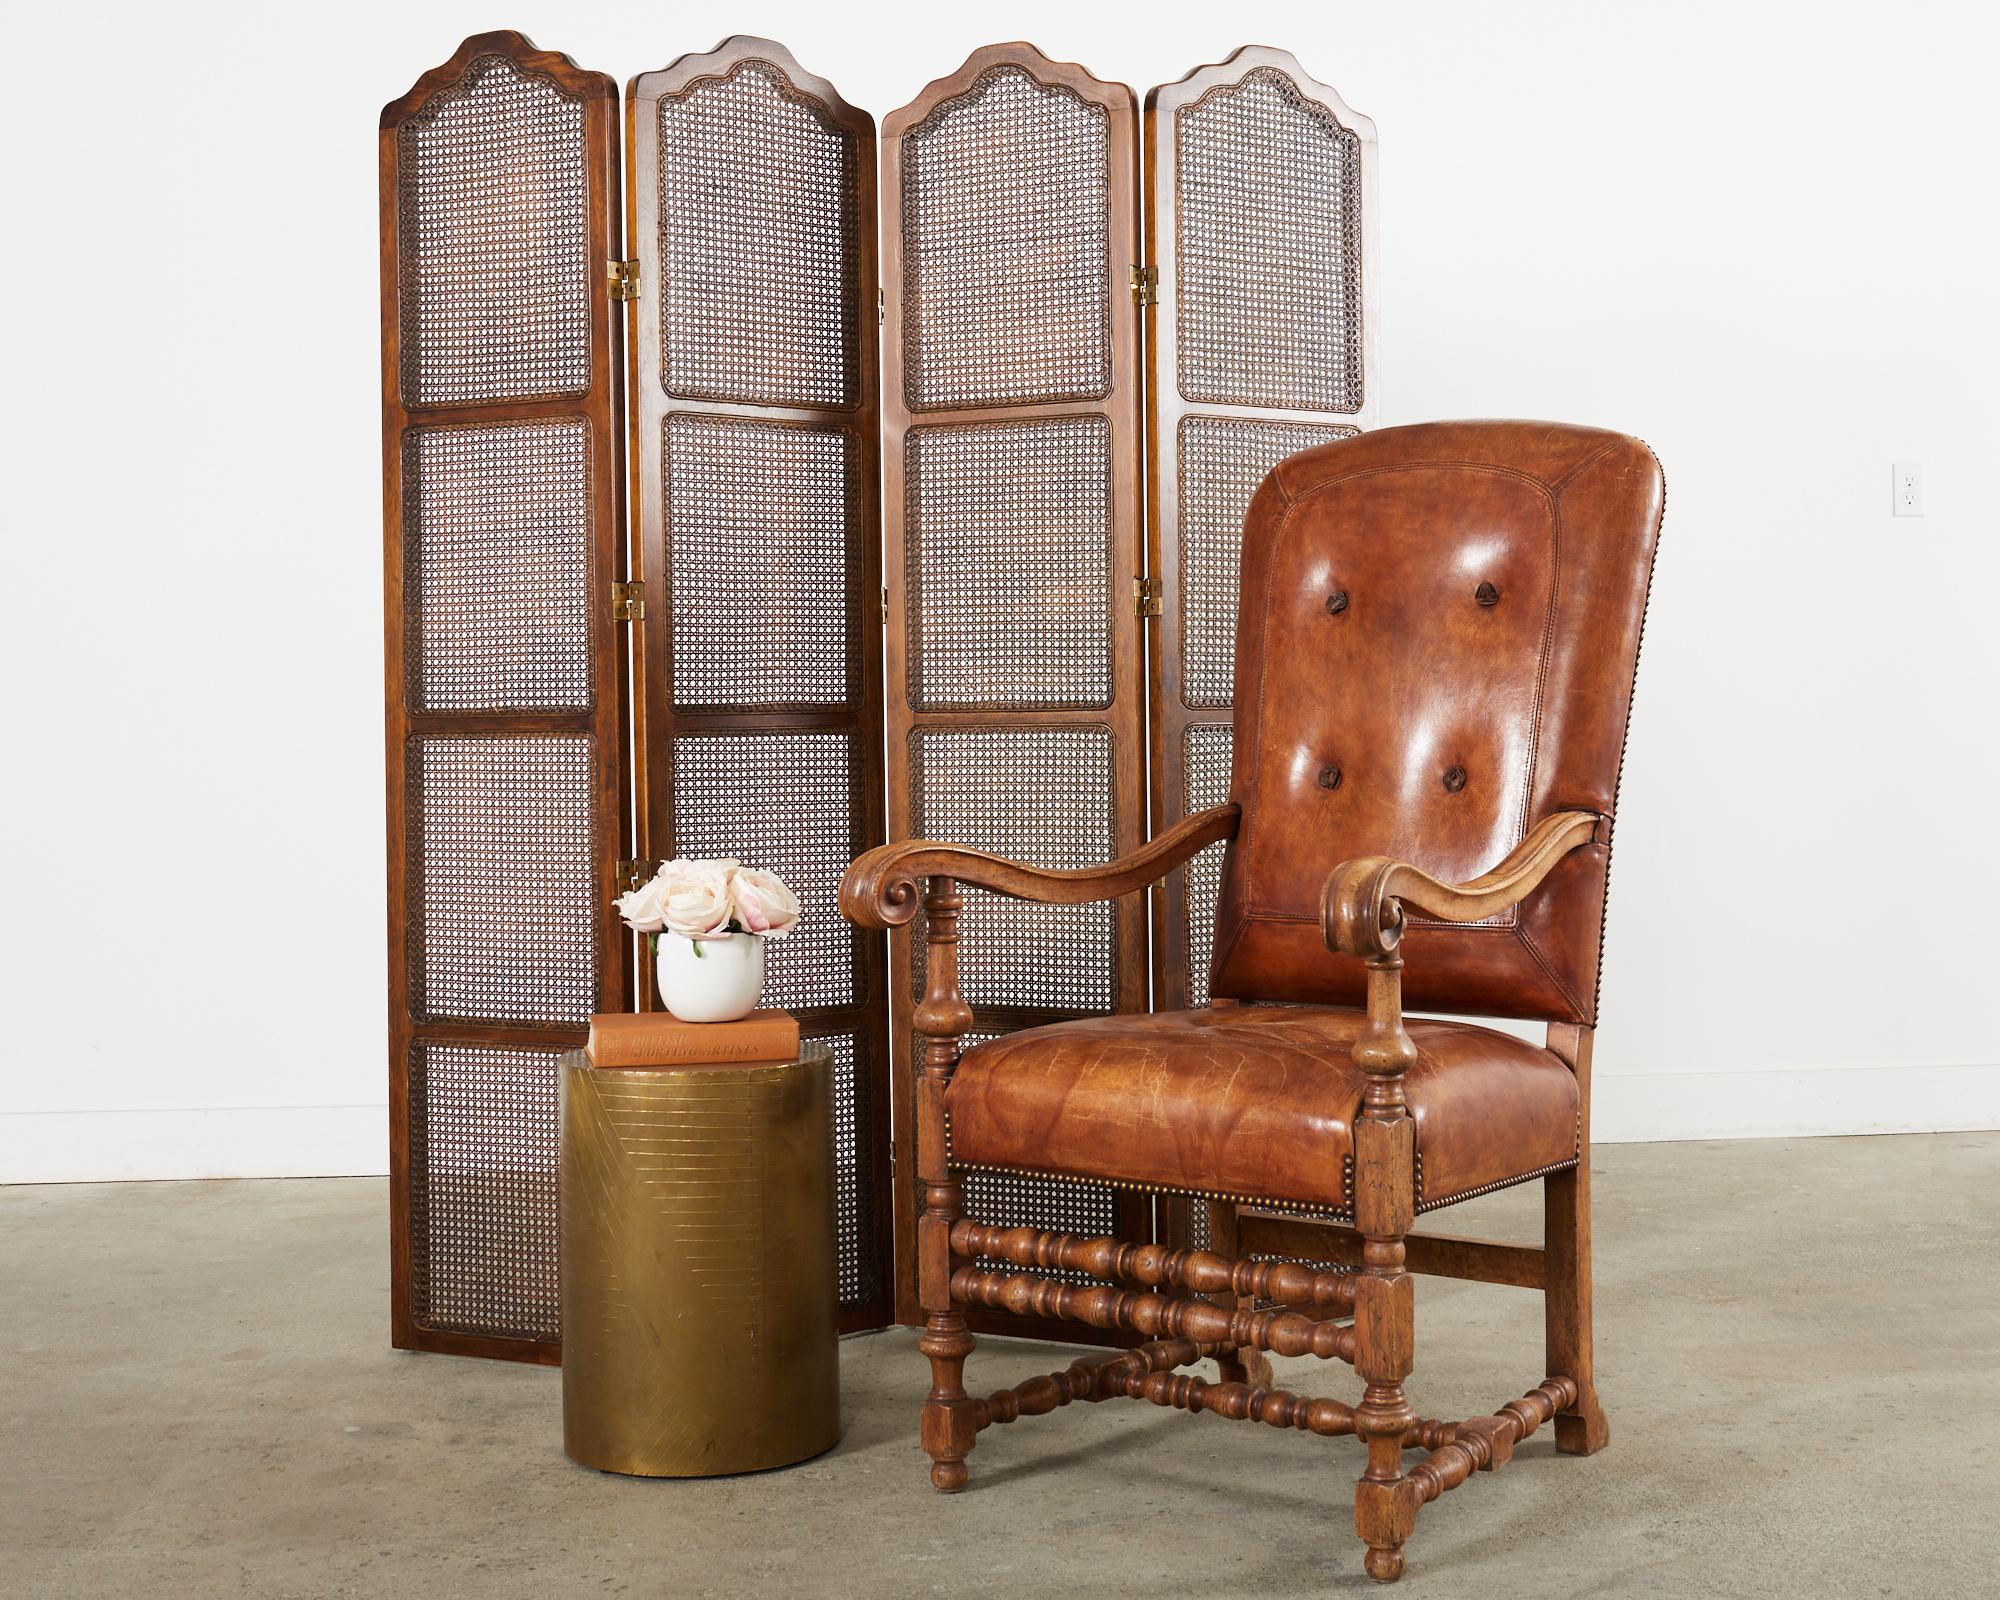 Großer Bibliothekssessel aus Hartholz und Leder, entworfen von Hendrix Allardyce im Stil des italienischen Barock. Der monumentale Stuhl verfügt über einen handgeschnitzten Hartholzrahmen mit großen, geformten Armlehnen, die sich anmutig wölben und